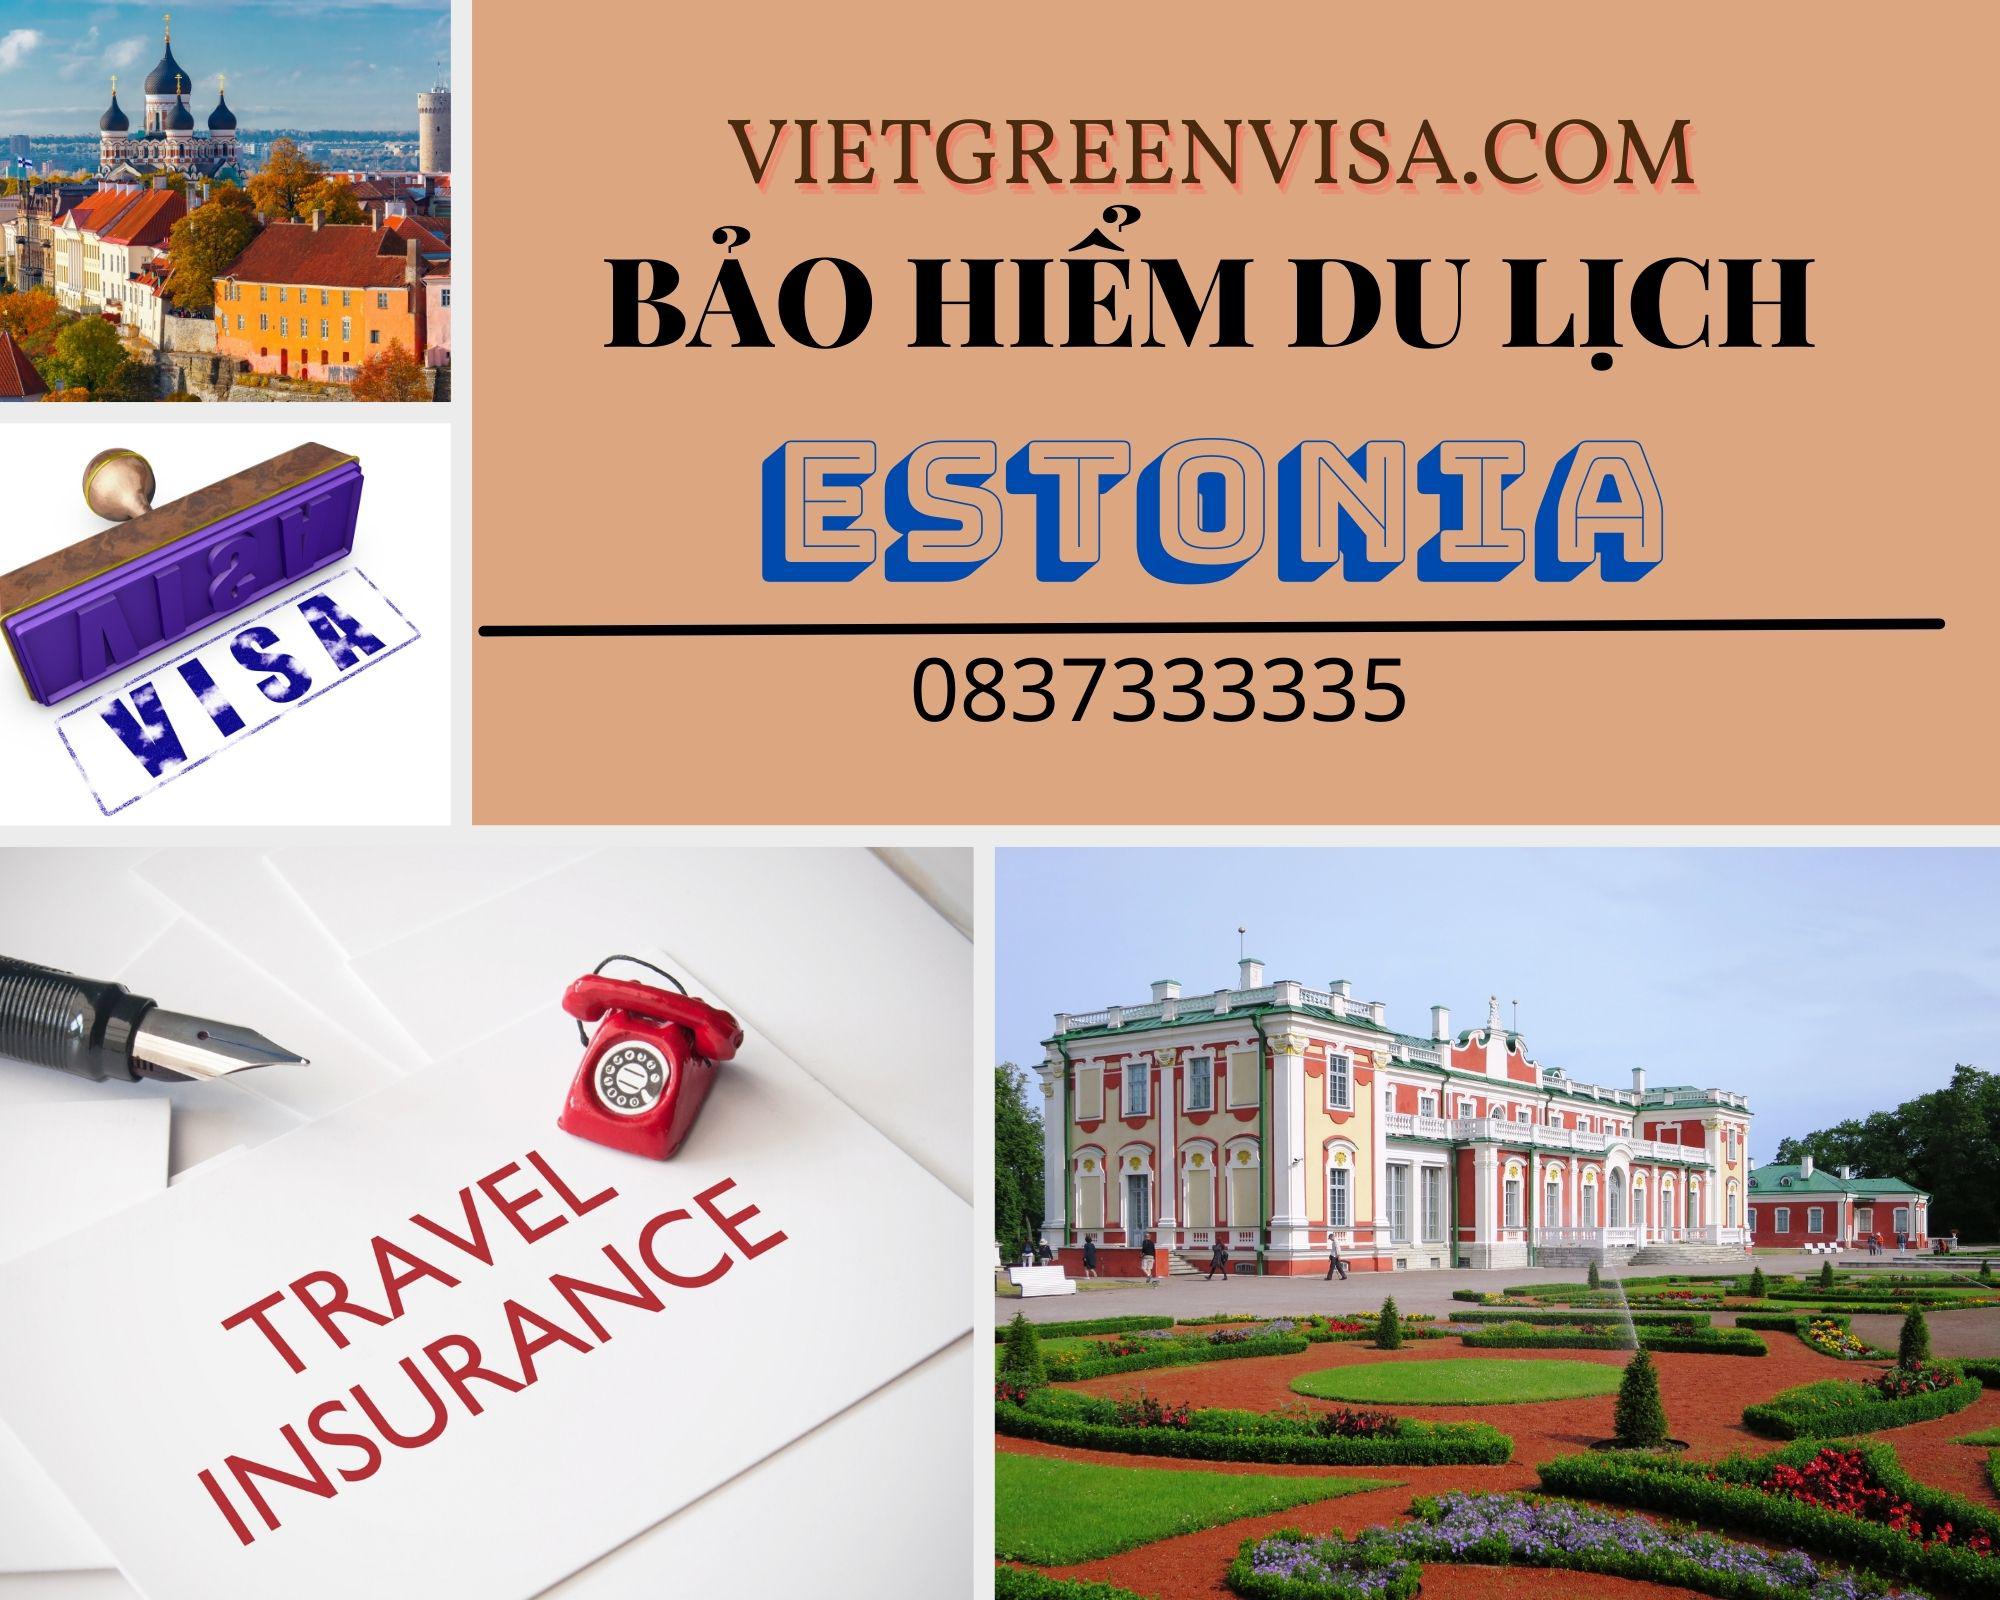 Hỗ trợ làm bảo hiểm du lịch xin visa Estonia giá tốt